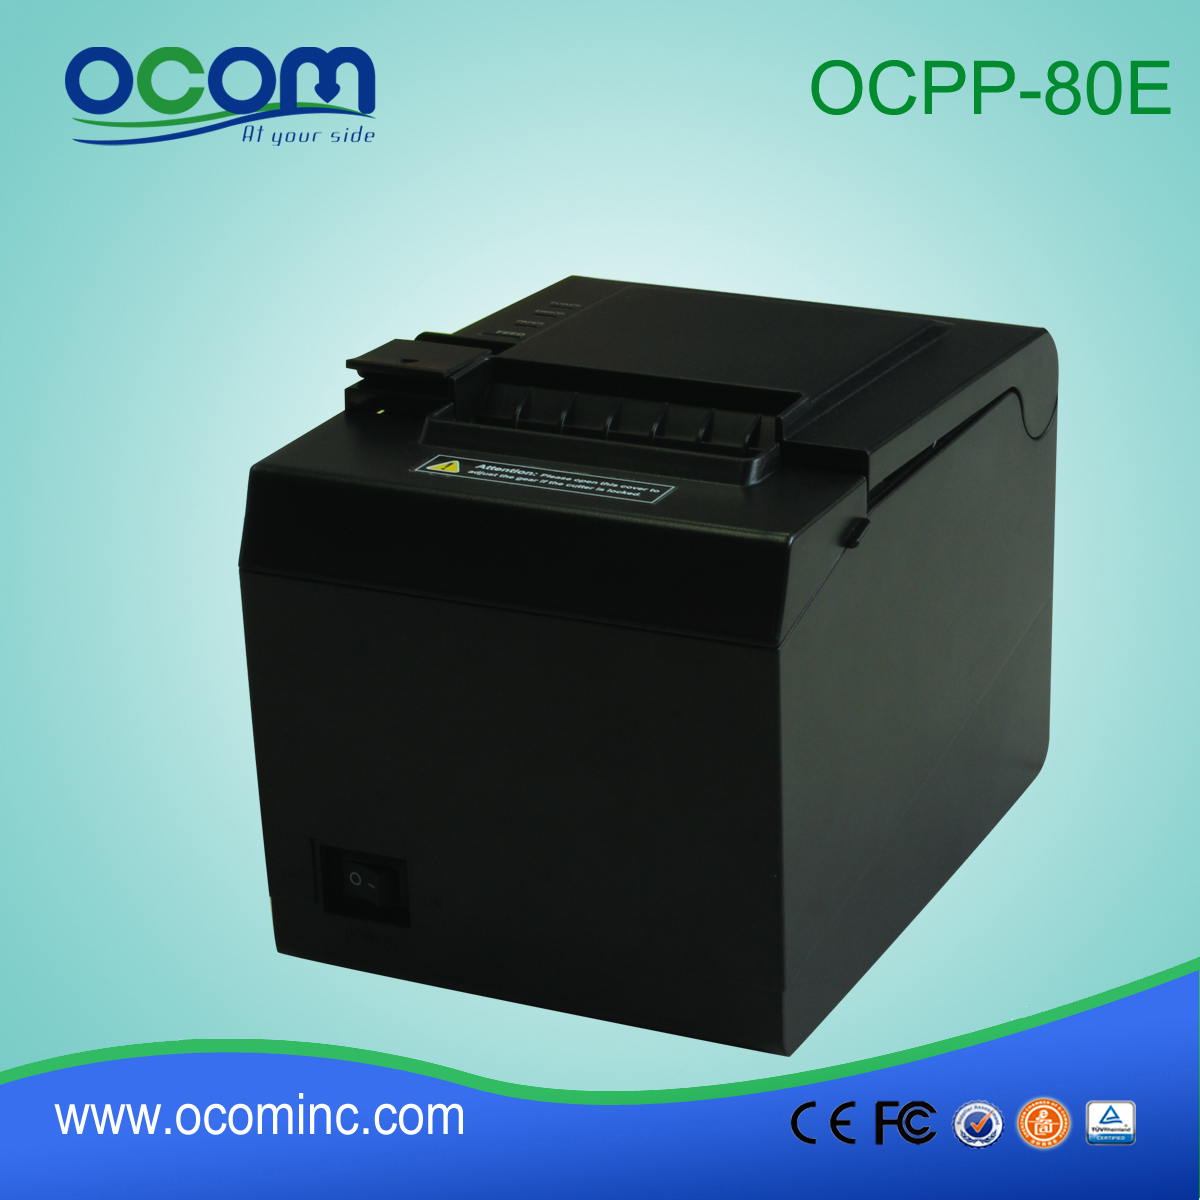 الصين مصنع توريد آلة الطباعة صناعة الورق (OCPP-80E)